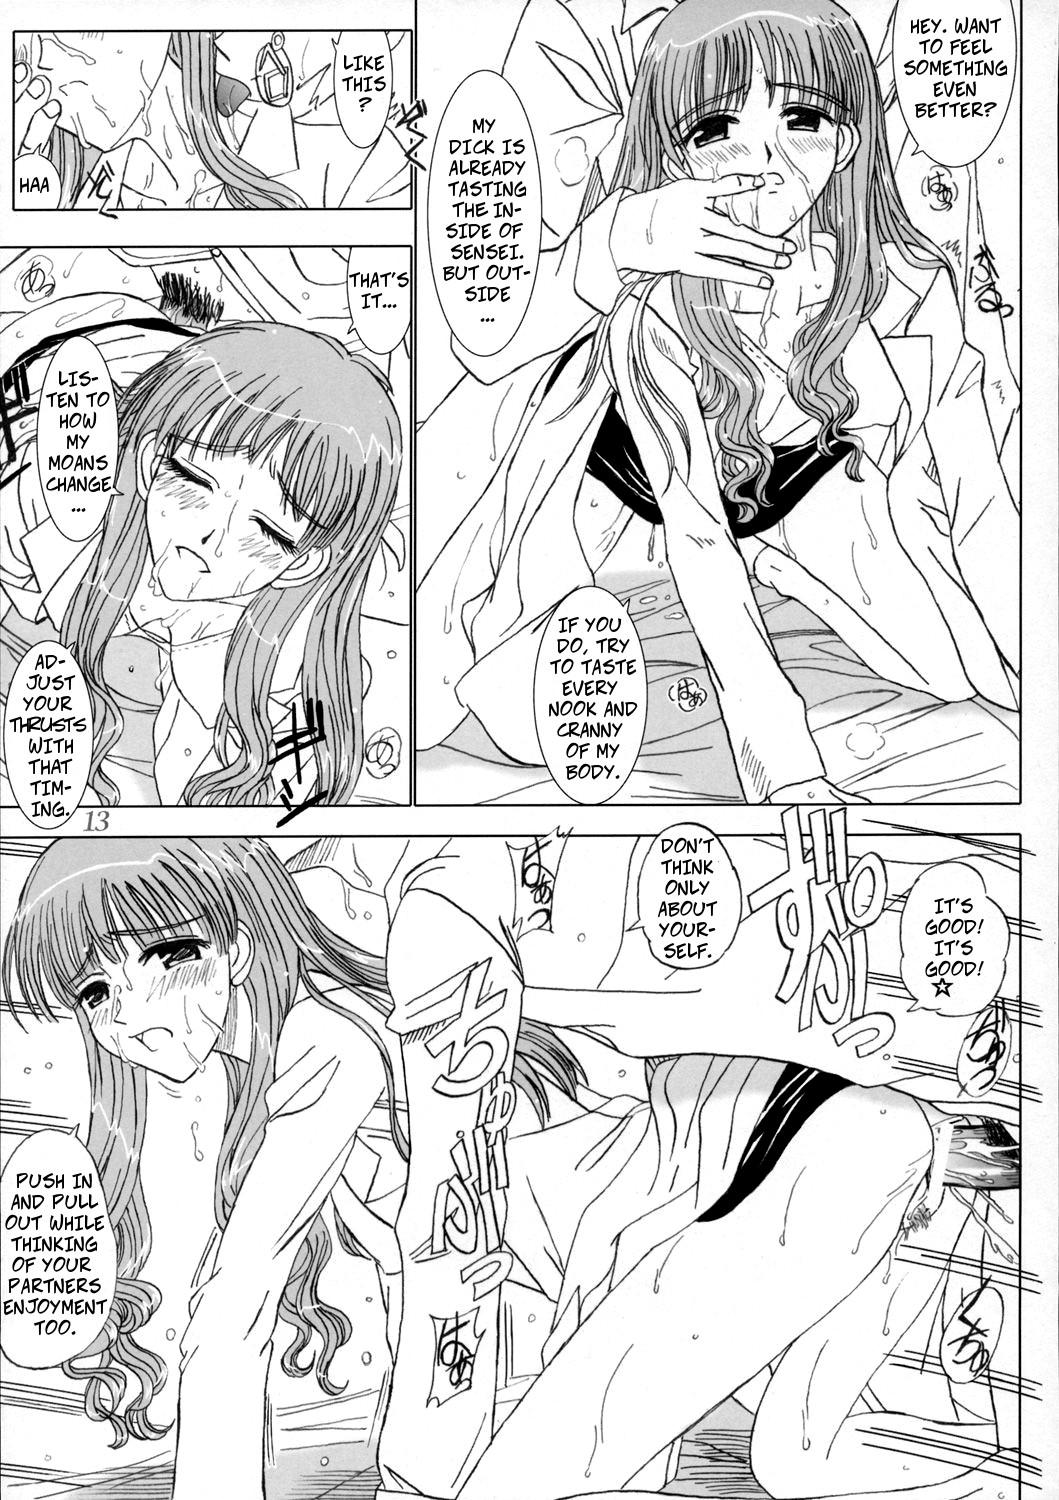 Super Hot Porn Secret Lesson - School rumble Oldvsyoung - Page 12